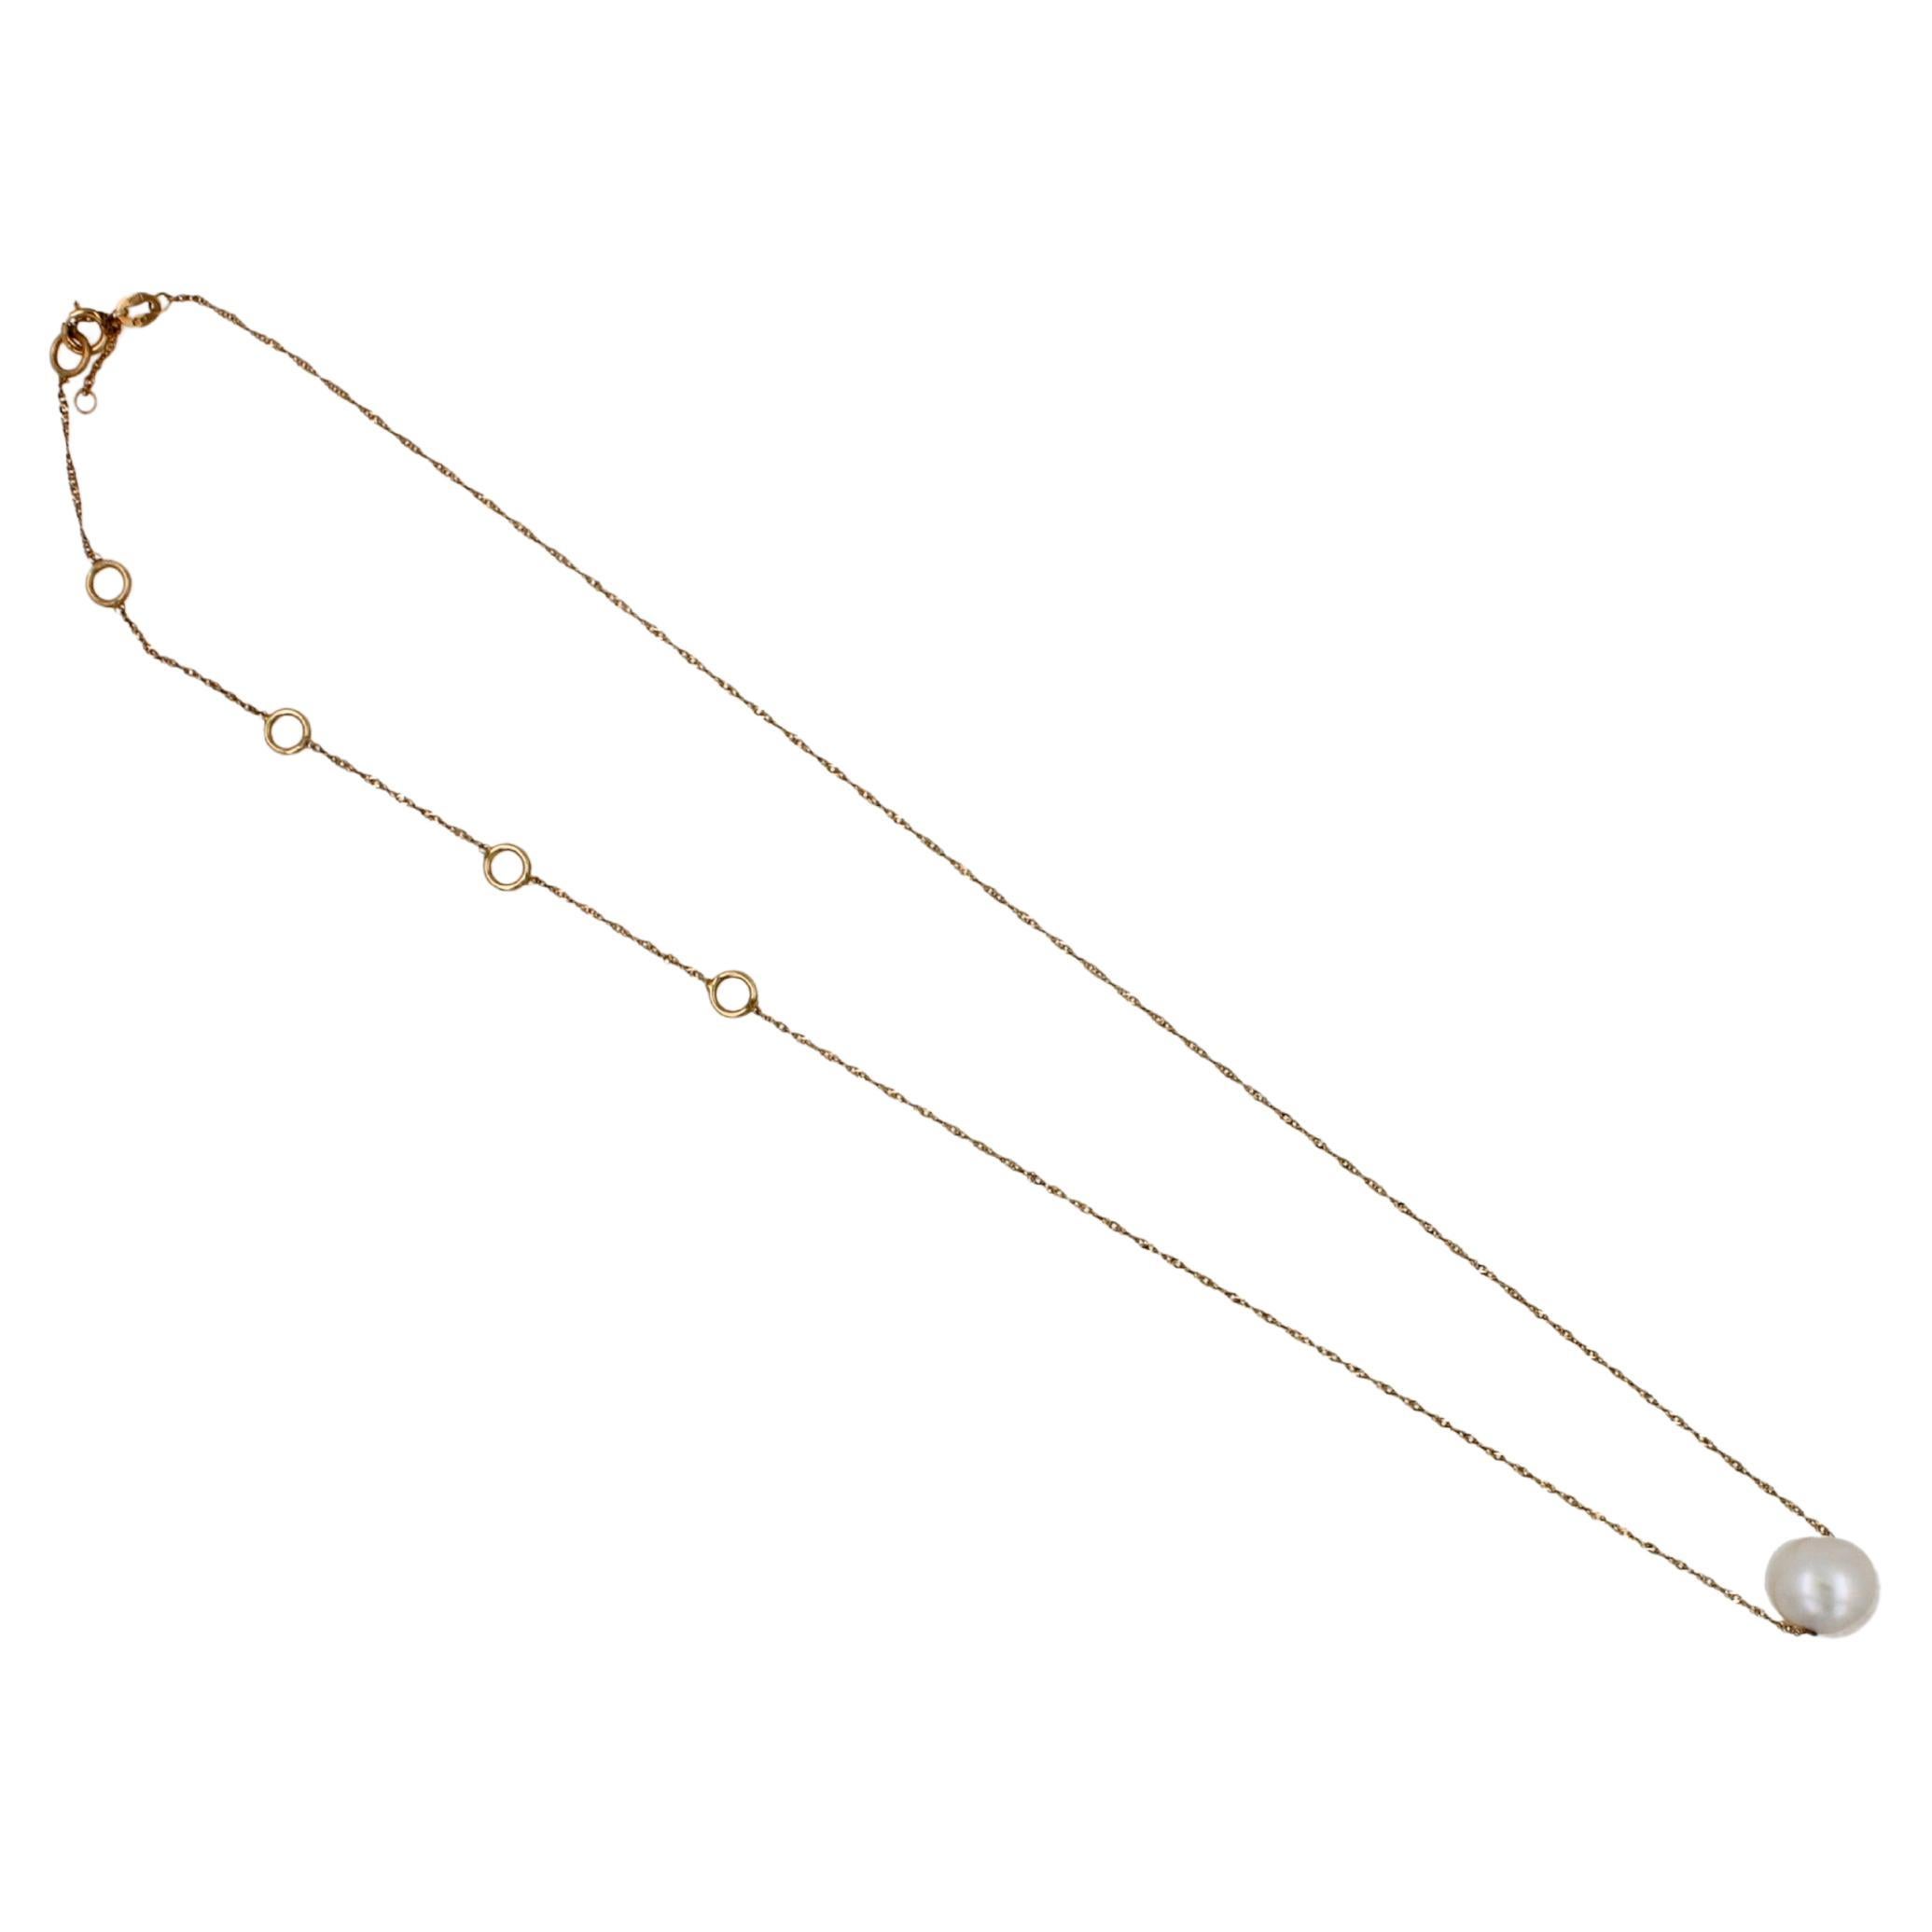 Weiße Perle 
14 Karat Gelbgold
Einstellbare Länge der hochglanzpolierten Kette
Hochwertige Perle mit schönem Glanz, Luster, Größe und Brillanz
Klassisches, minimalistisches Design 